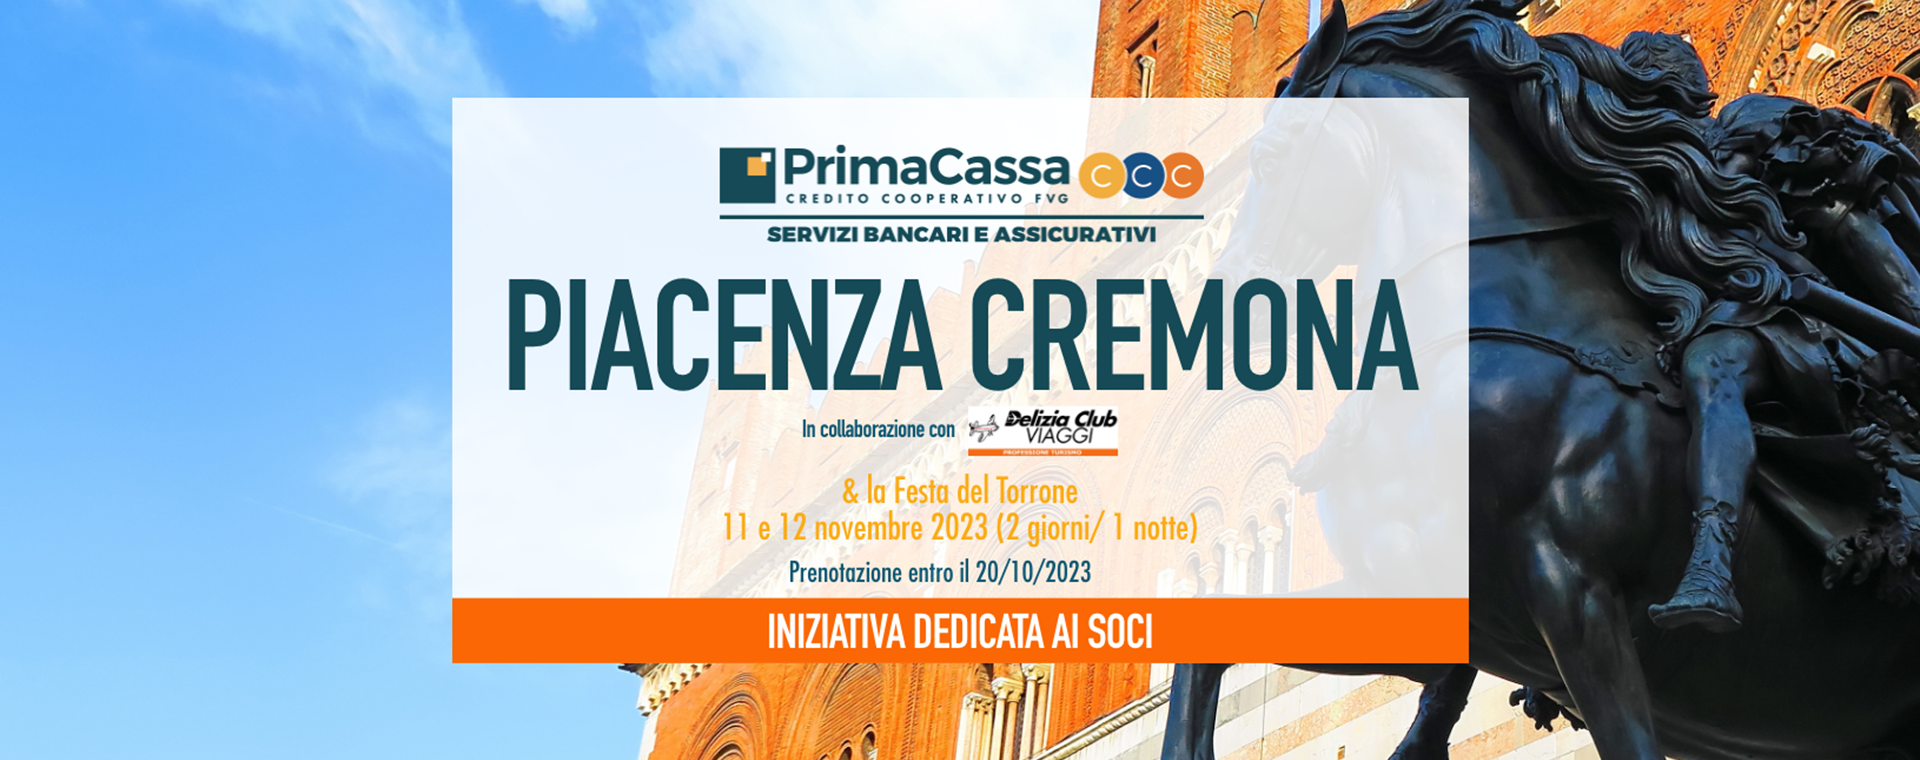 Gite speciali con PrimaCassa: PIACENZA/CREMONA 